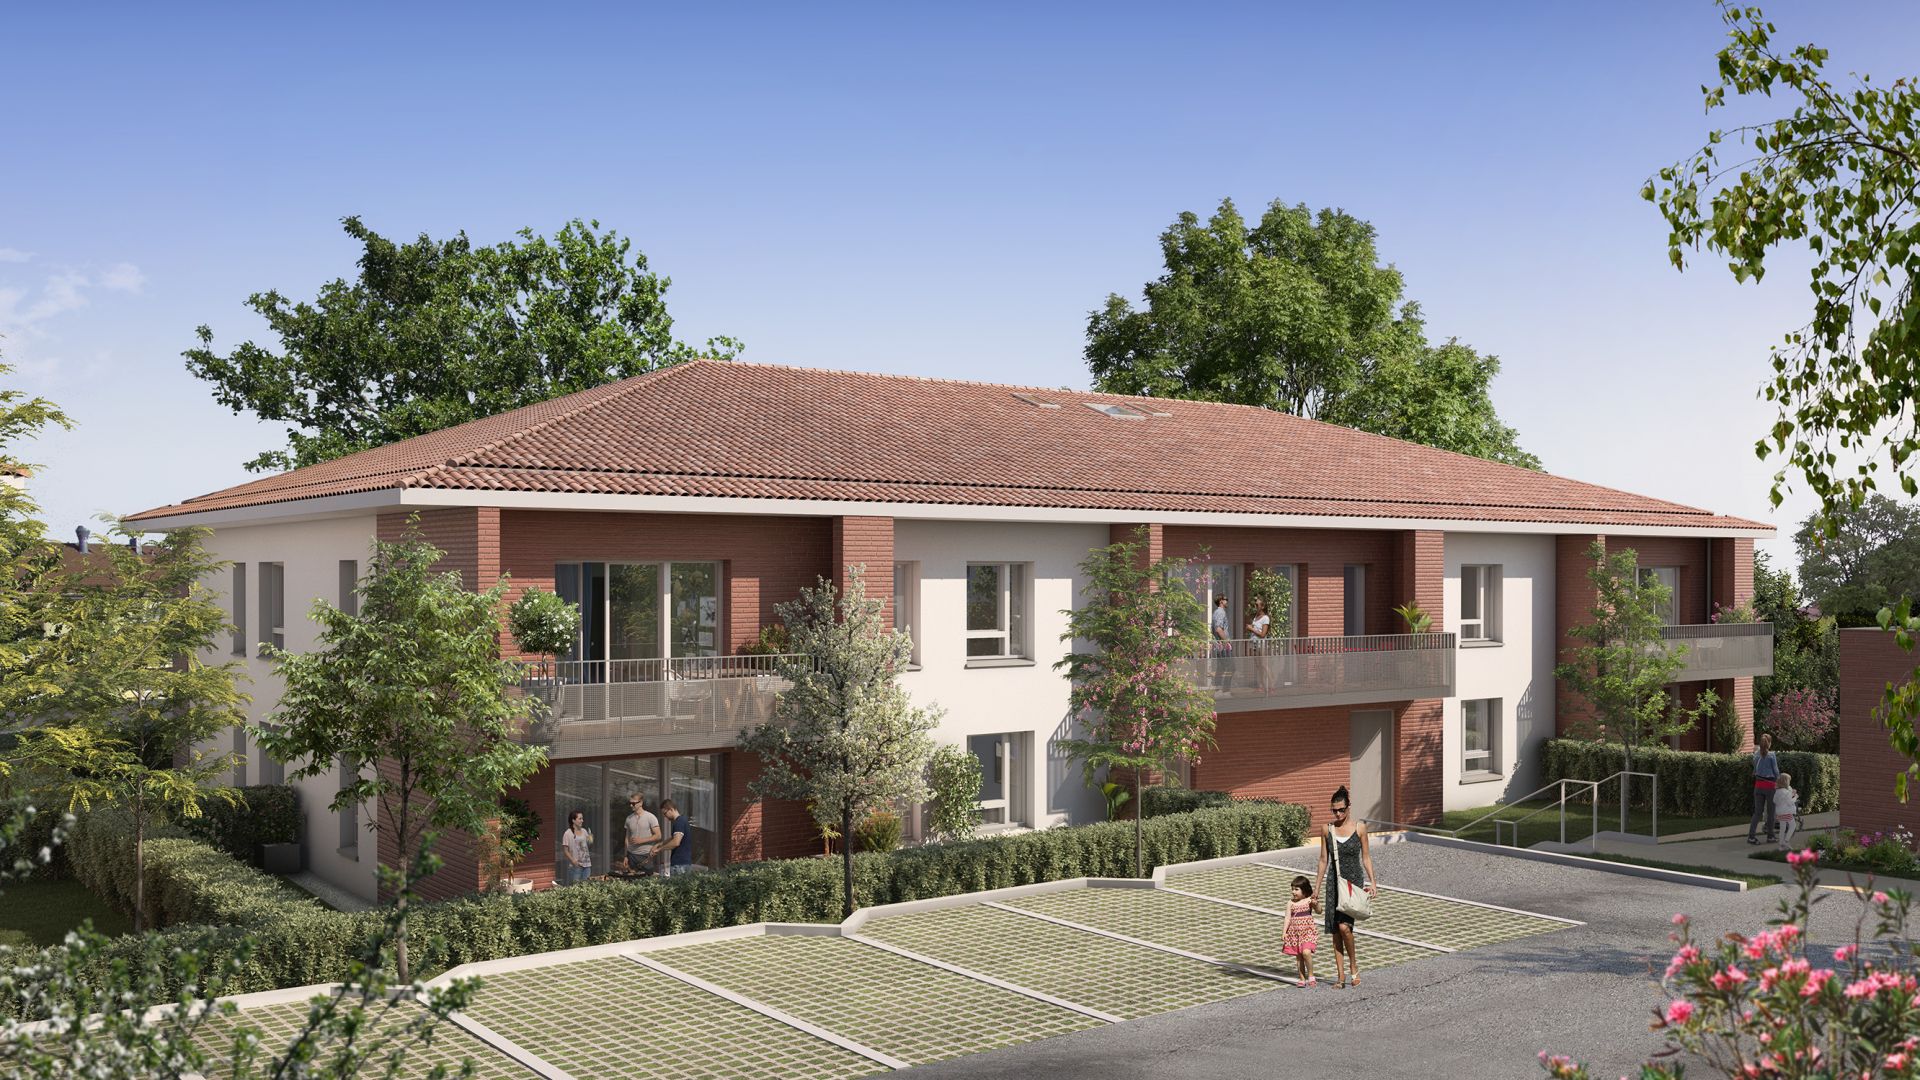 Greencity immobilier - achat appartements neufs du T2 au T3 Duplex - Résidence Hameau Saint-Clément - 31700 Cornebarrieu